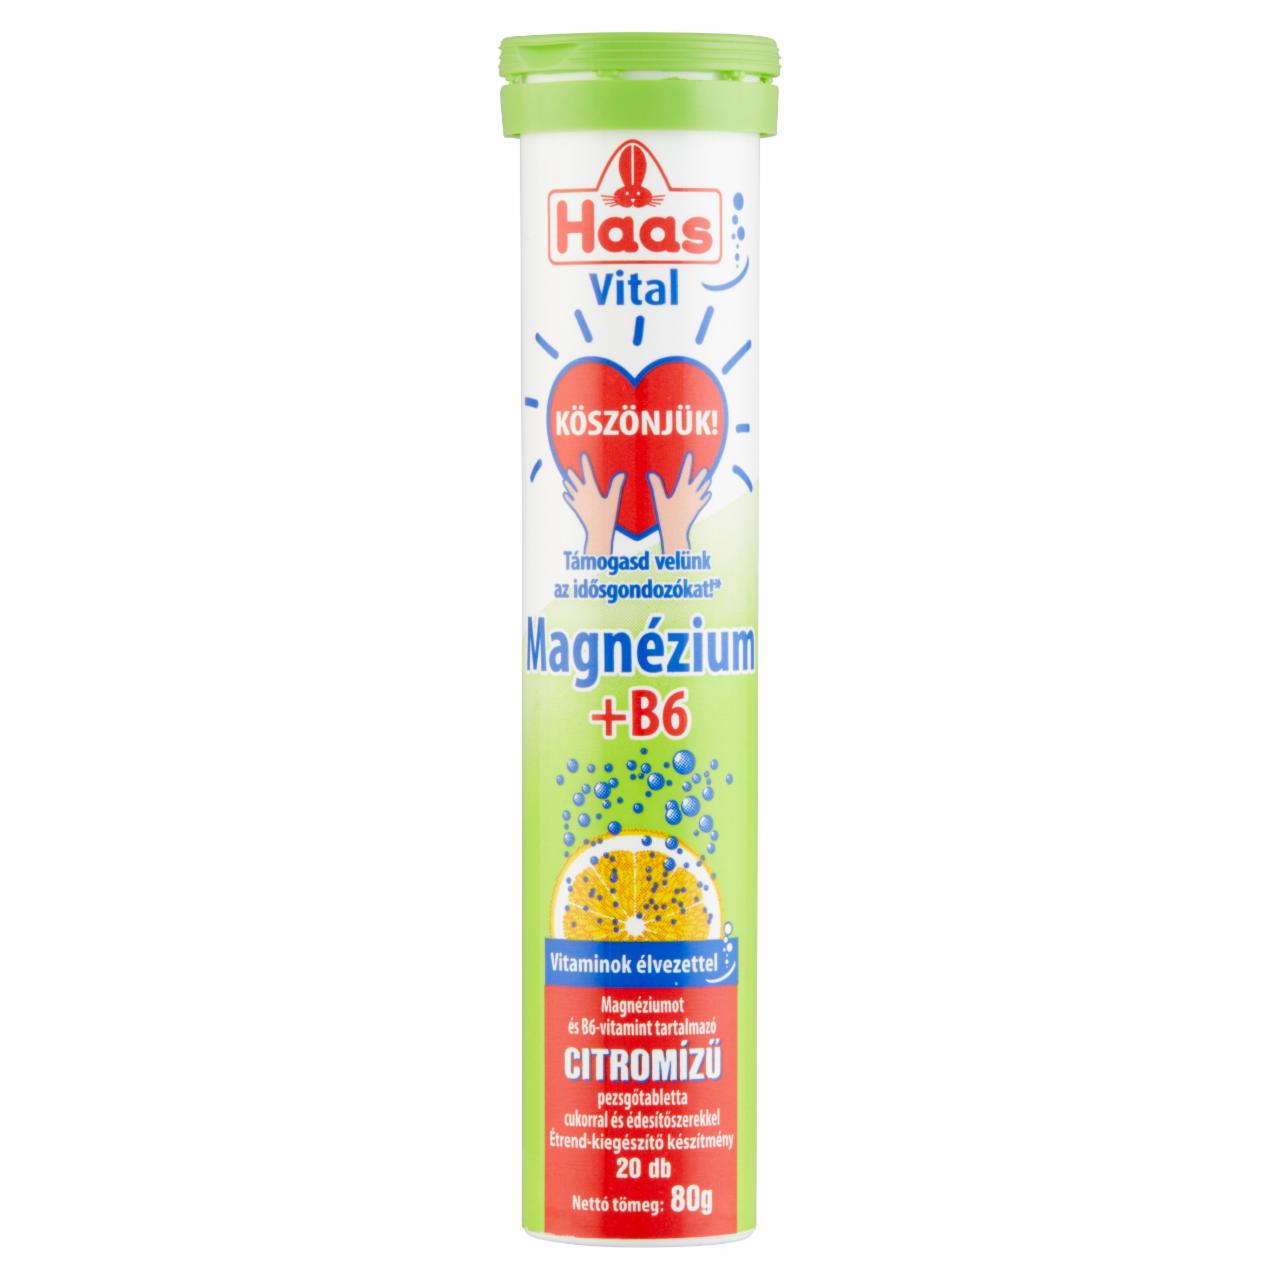 Képek - Haas Vital Magnézium + B6 citromízű pezsgőtabletta cukorral és édesítőszerekkel 20 db 80 g